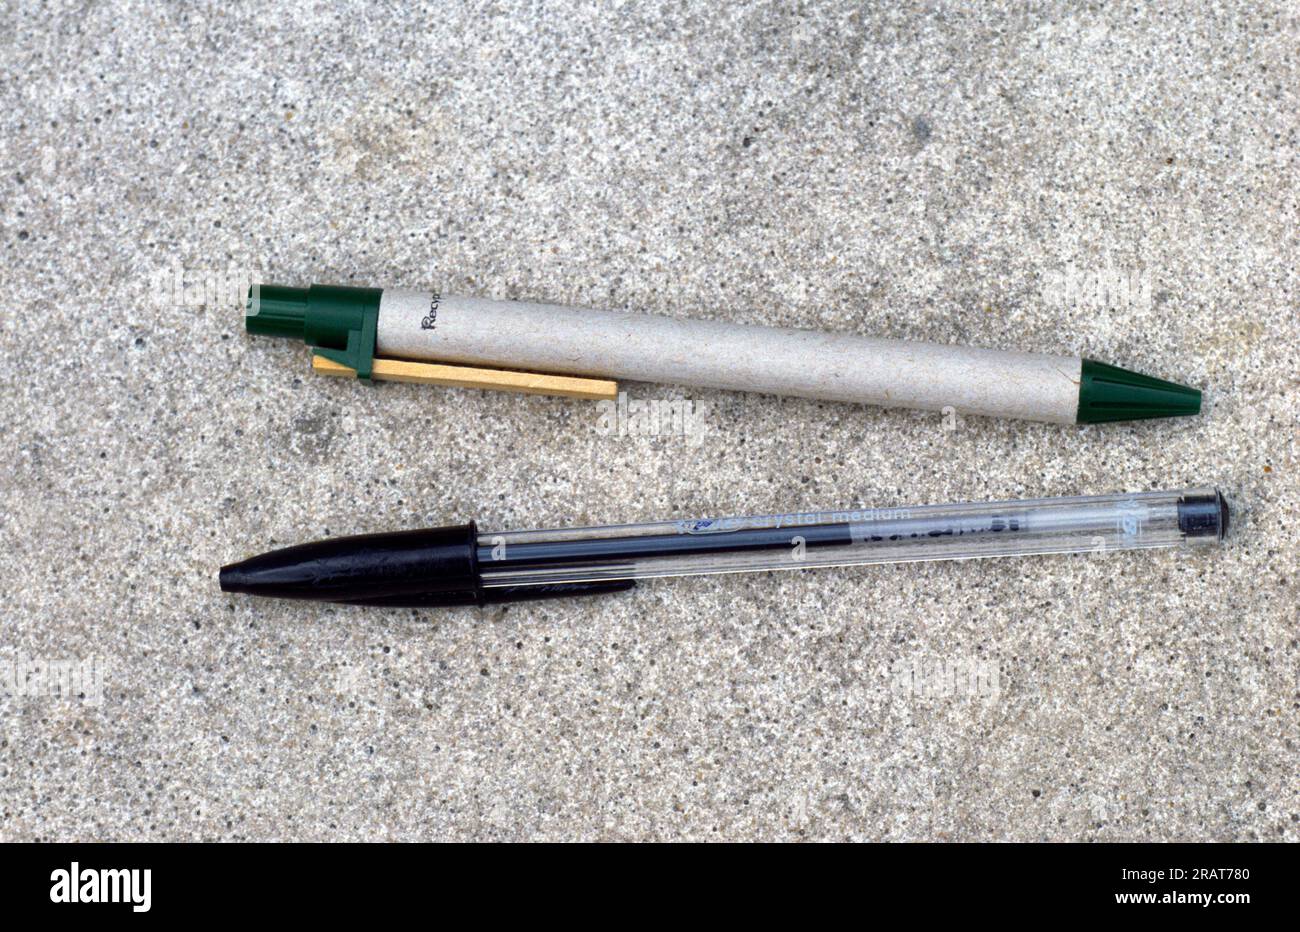 Zwei Stifte: Crystal Bic aus Kunststoff und Biro aus recyceltem Material Stockfoto